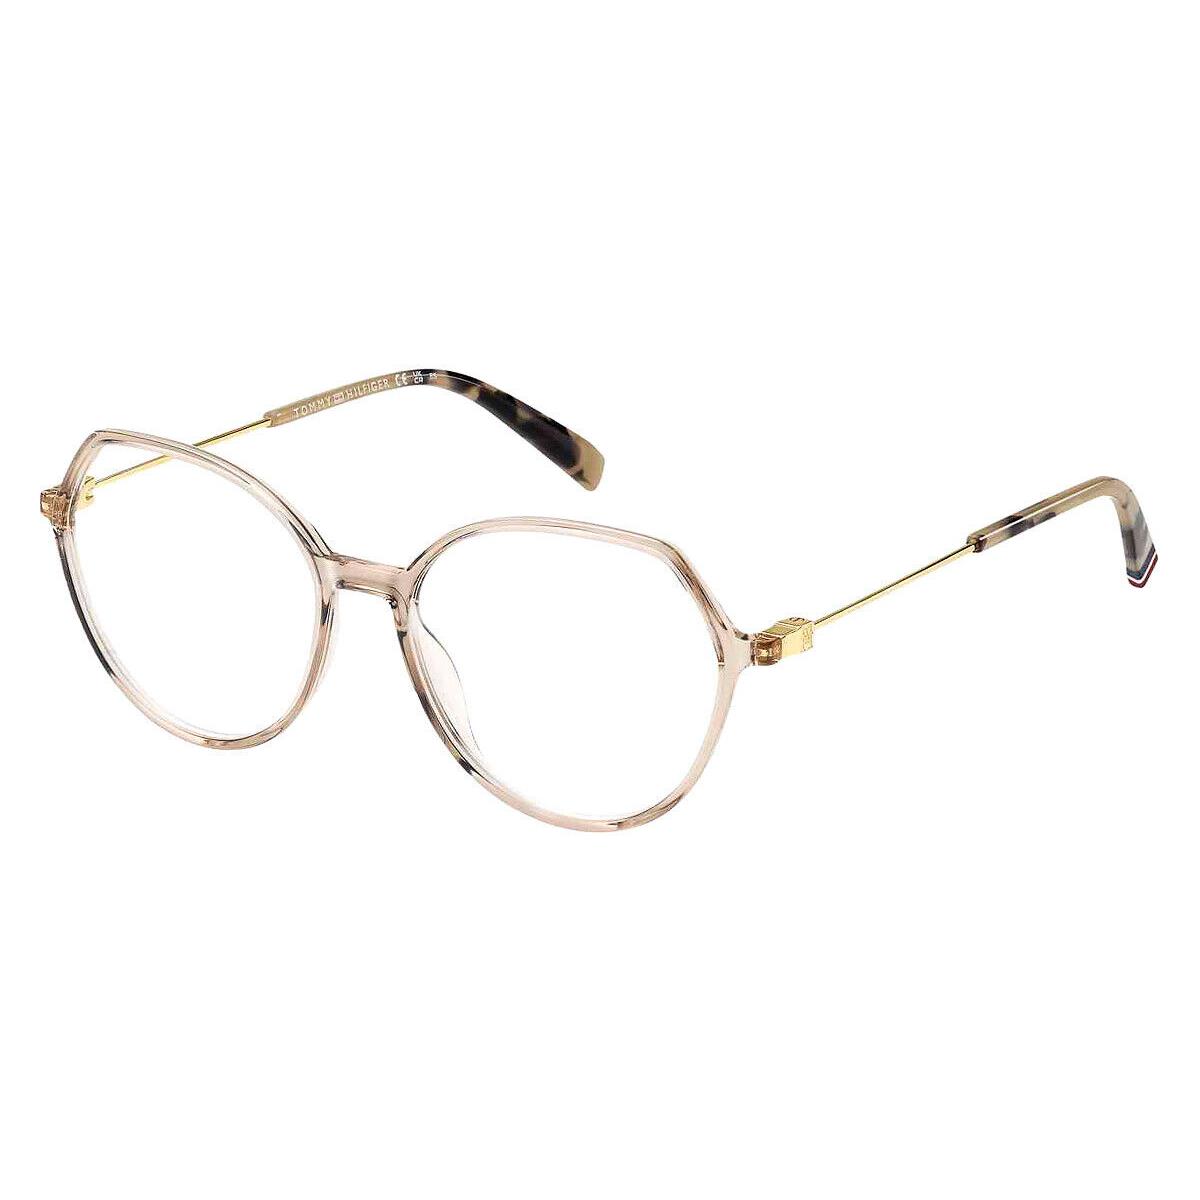 Tommy Hilfiger Thf Eyeglasses Women 54mm - Frame: Nude, Lens: Demo